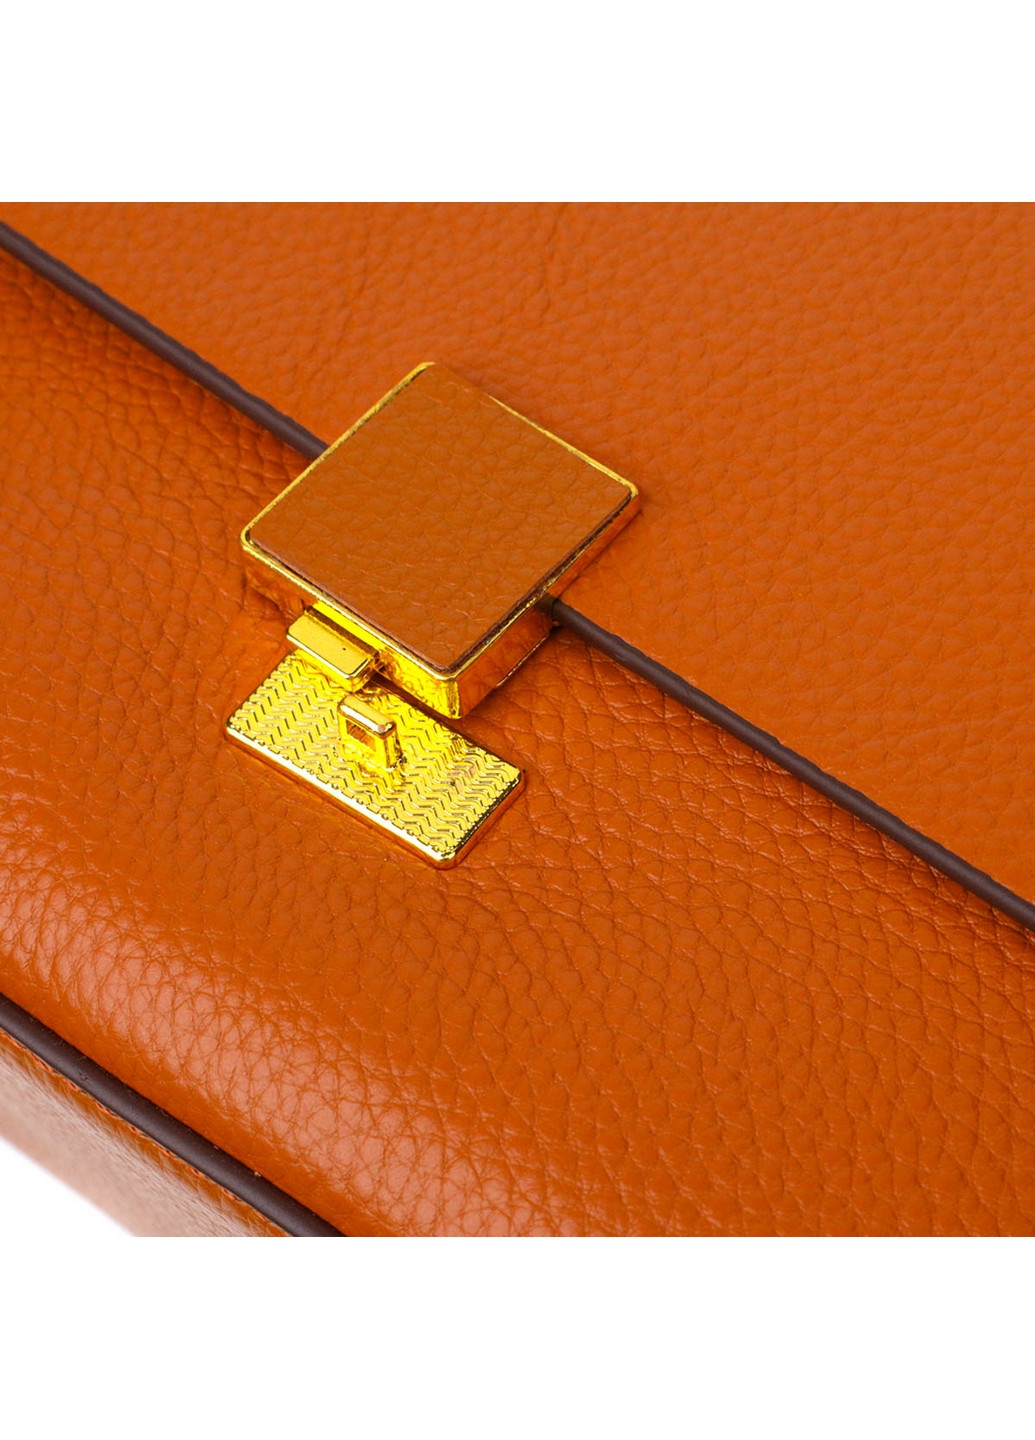 Женская кожаная сумка 20,5х13х8 см Vintage (260169421)